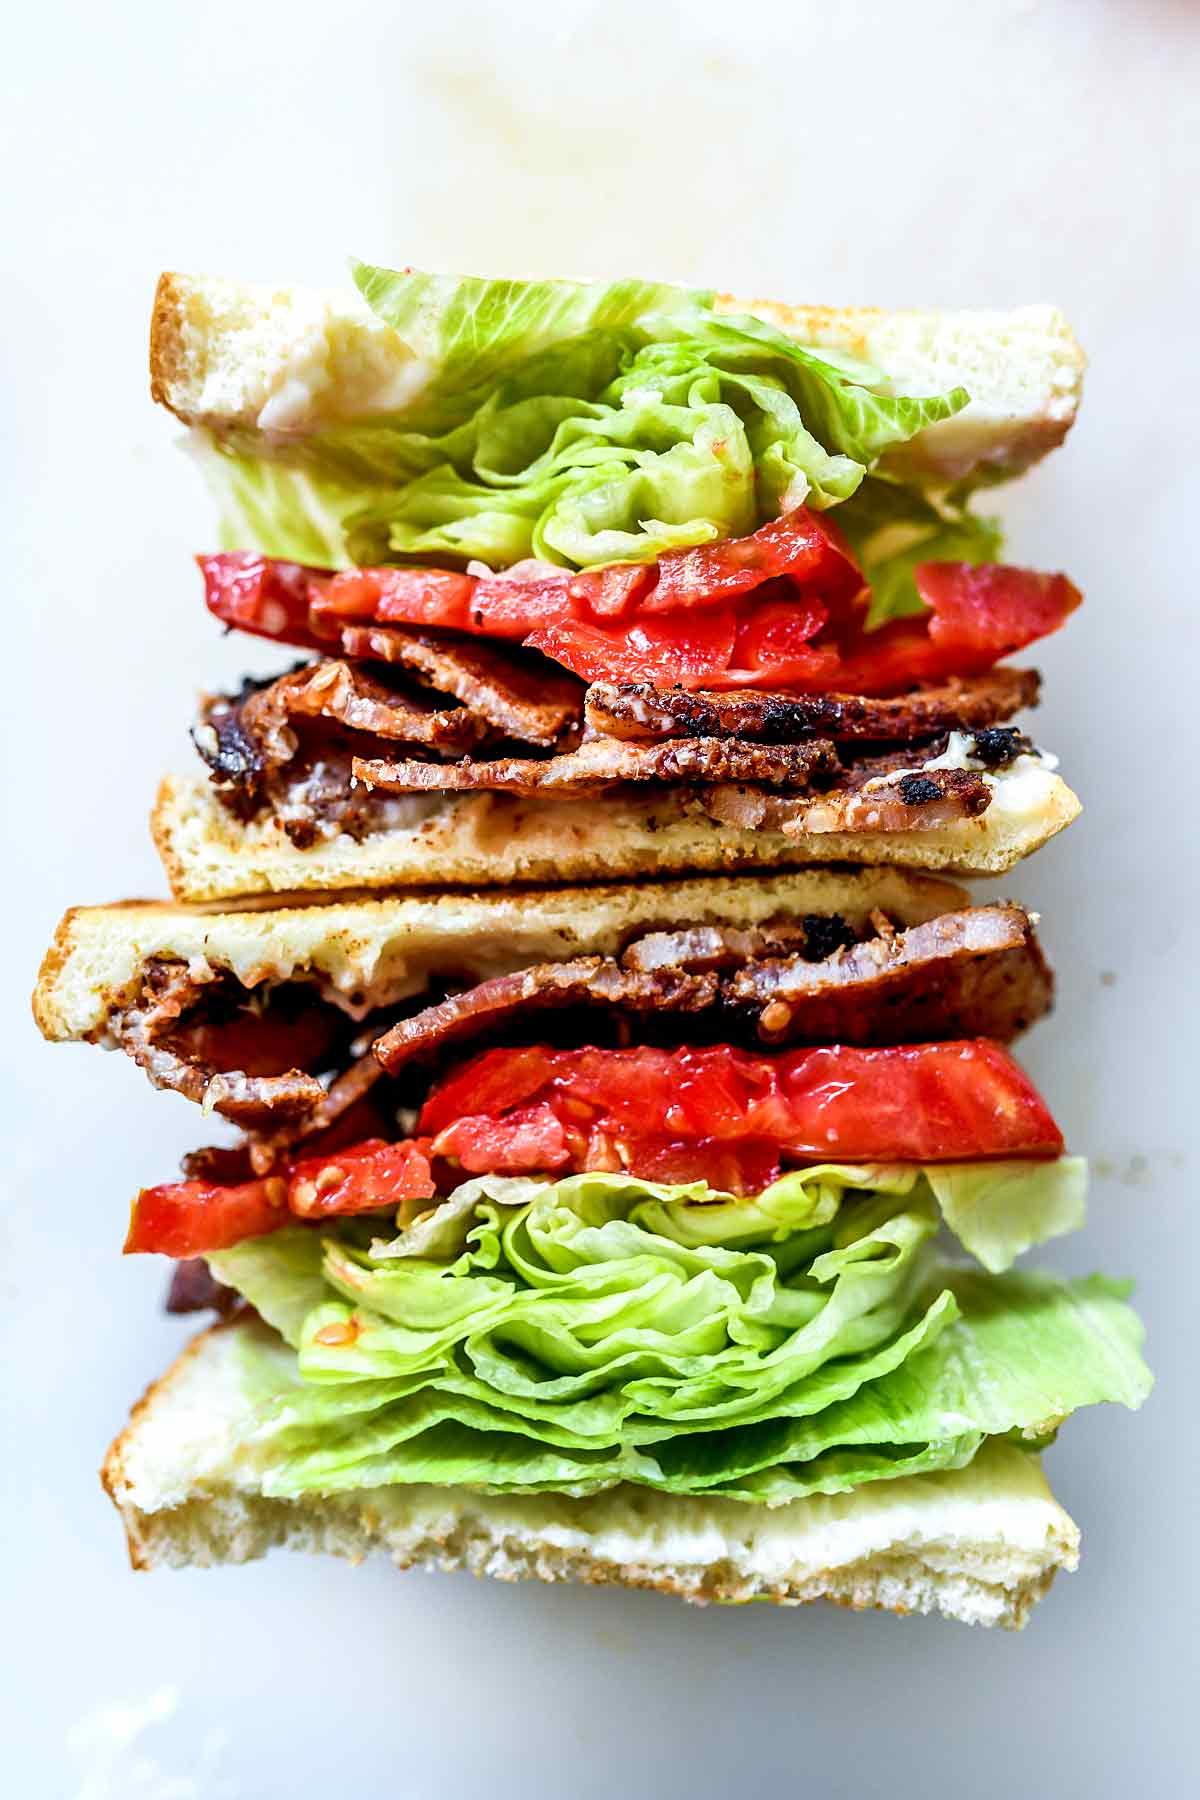 Le meilleur sandwich BLT | foodiecrush.com #blt #bacon #lettuce #tomato #sandwich #lunch #recipes